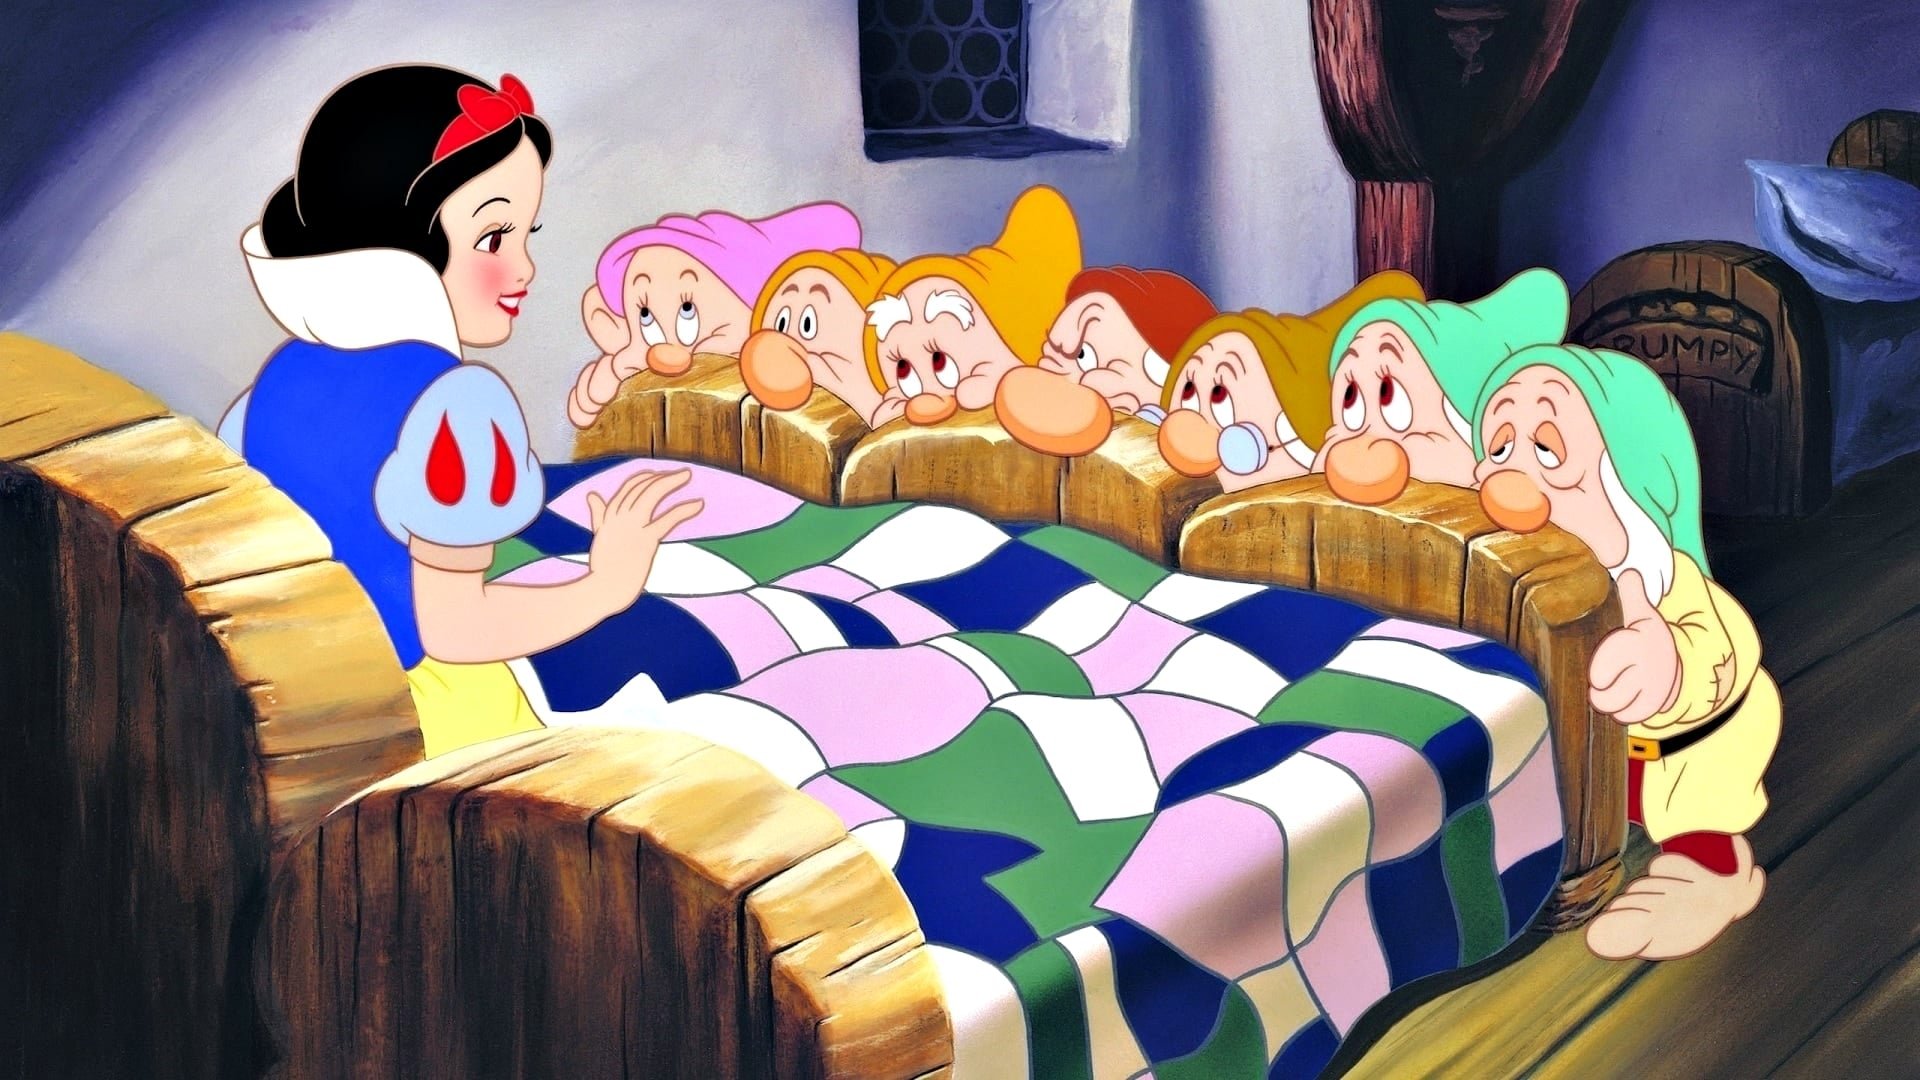 ფიფქია და შვიდი ჯუჯა / Snow White and the Seven Dwarfs ქართულად